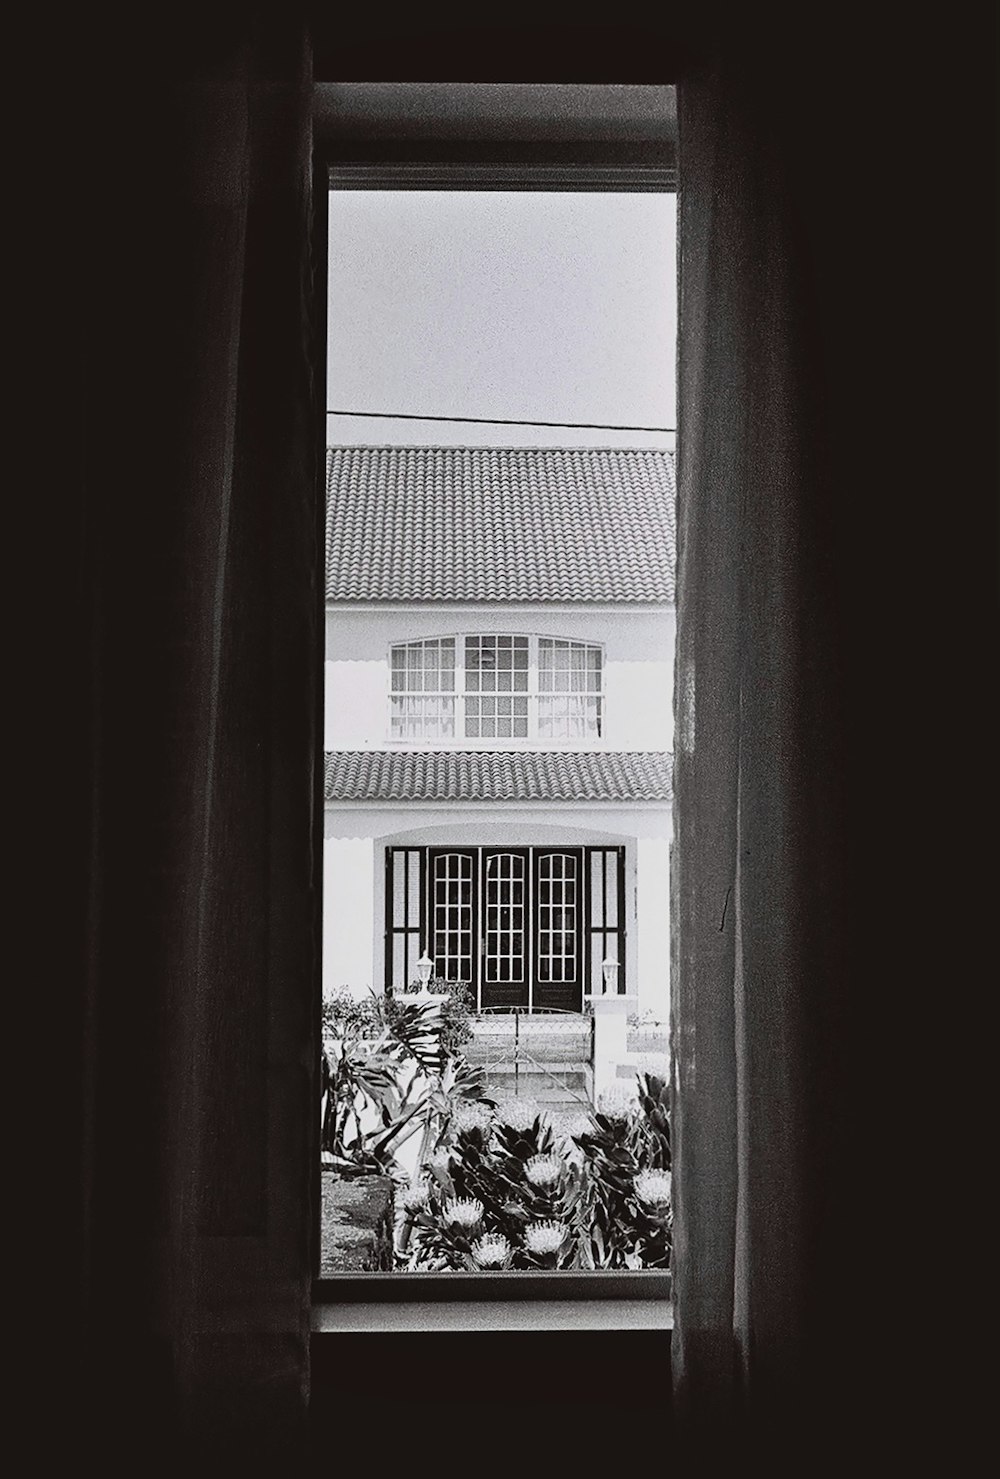 窓越しの家の白黒写真